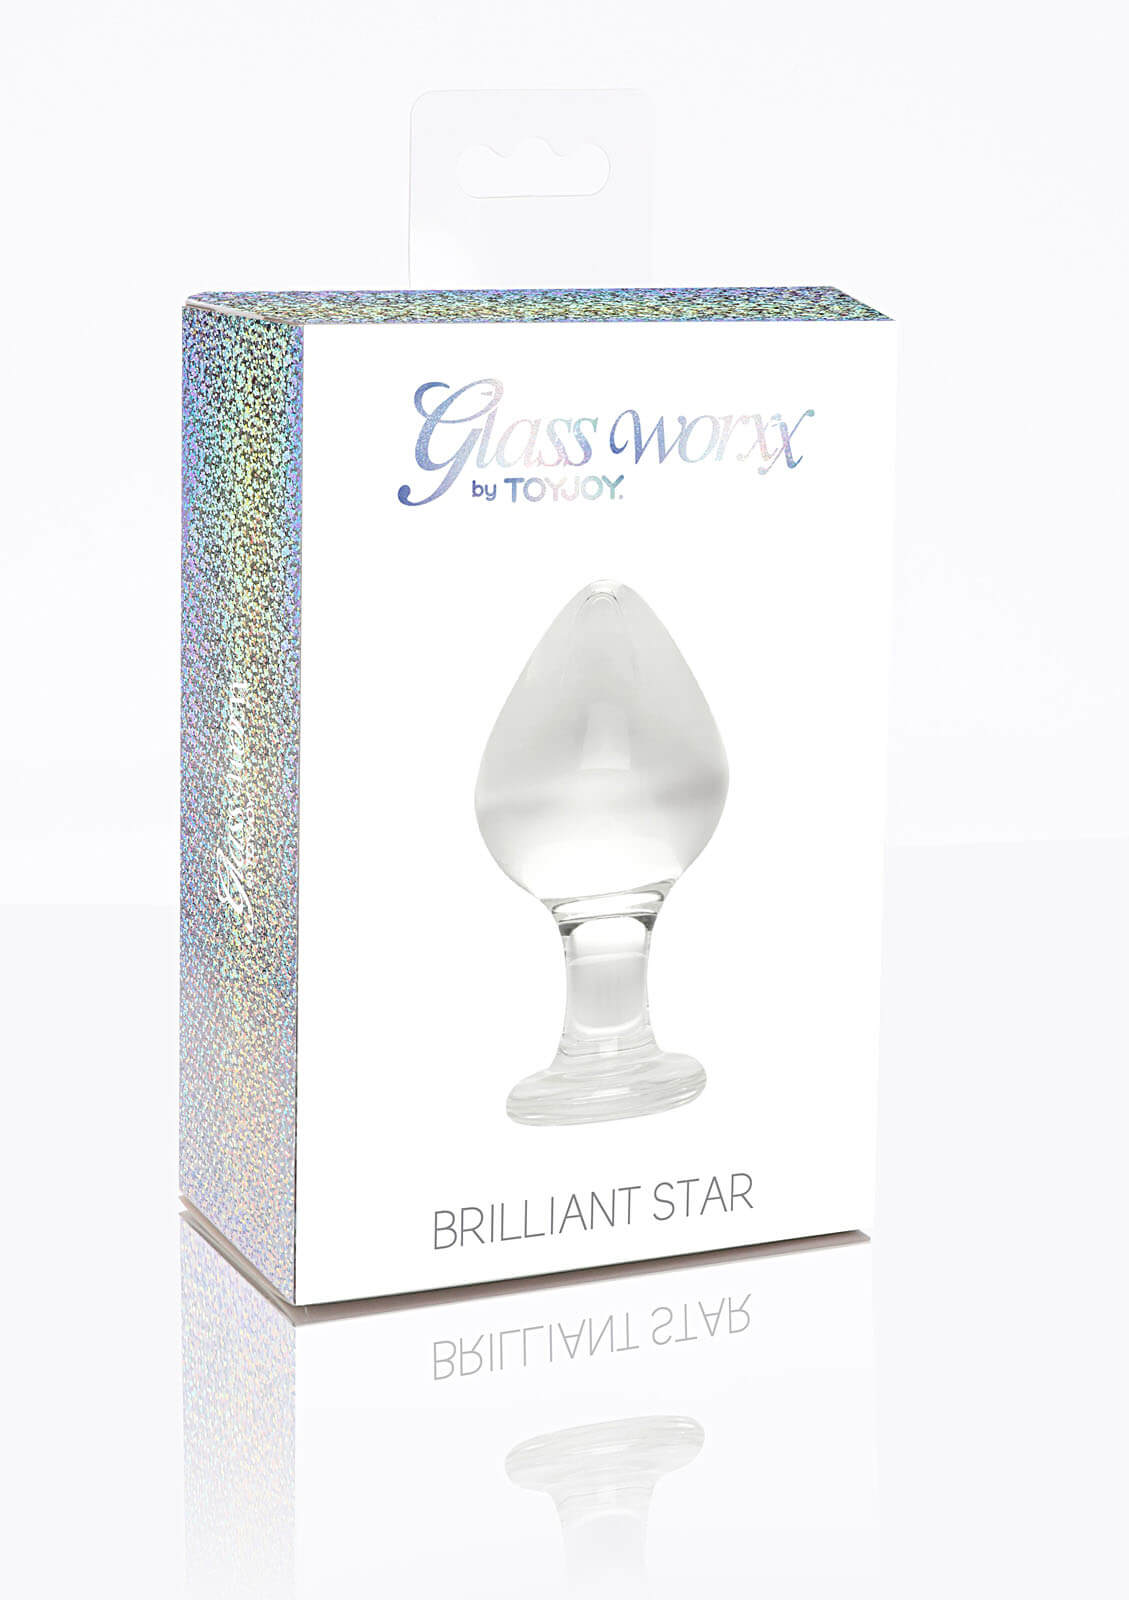 ToyJoy Glass Worxx Brilliant Star (9 cm)